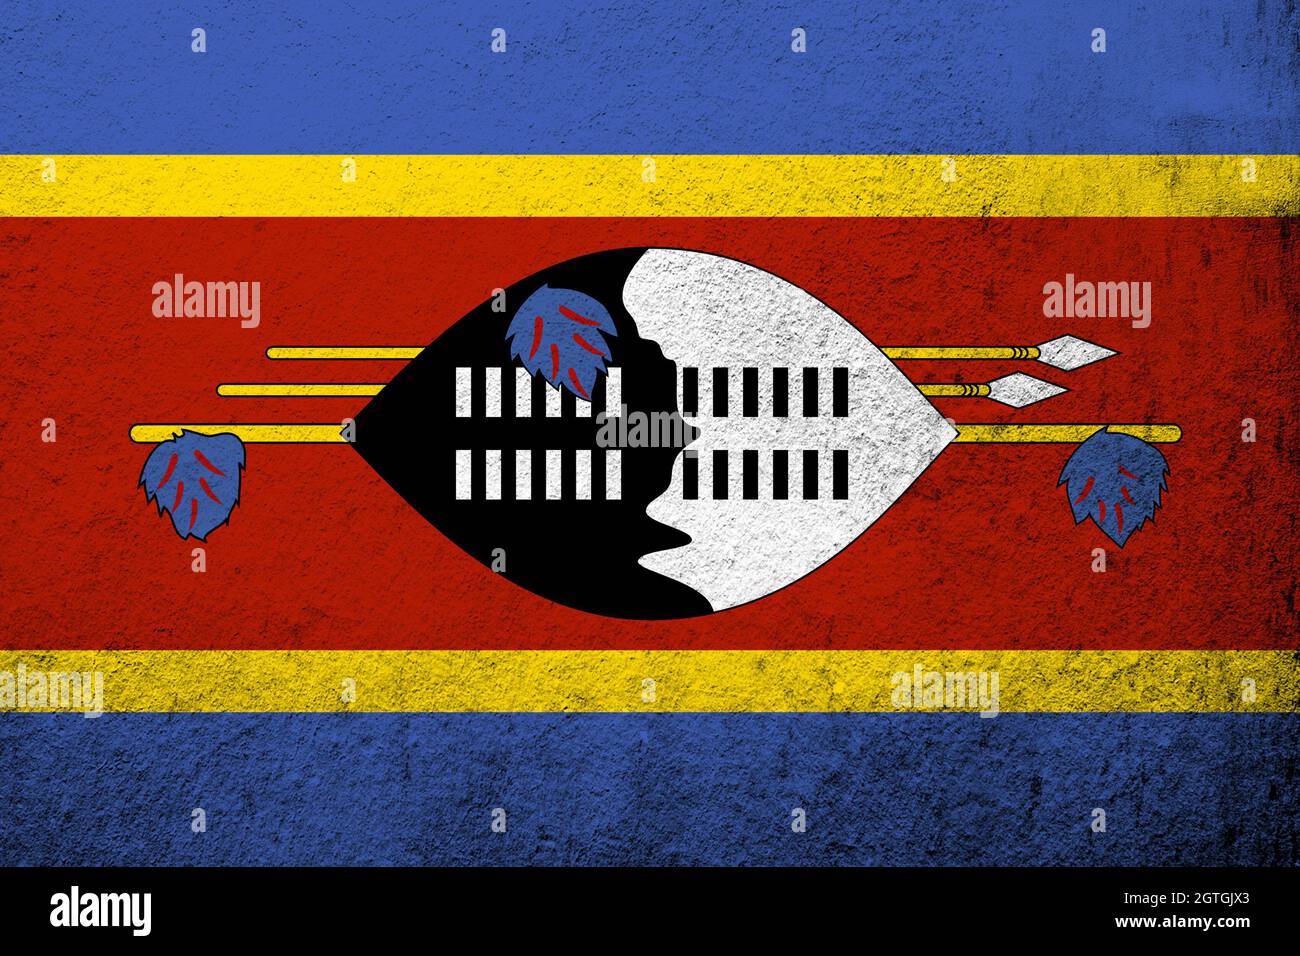 El Reino de Eswatini Bandera Nacional de Swazilandia. Grunge de fondo Foto de stock